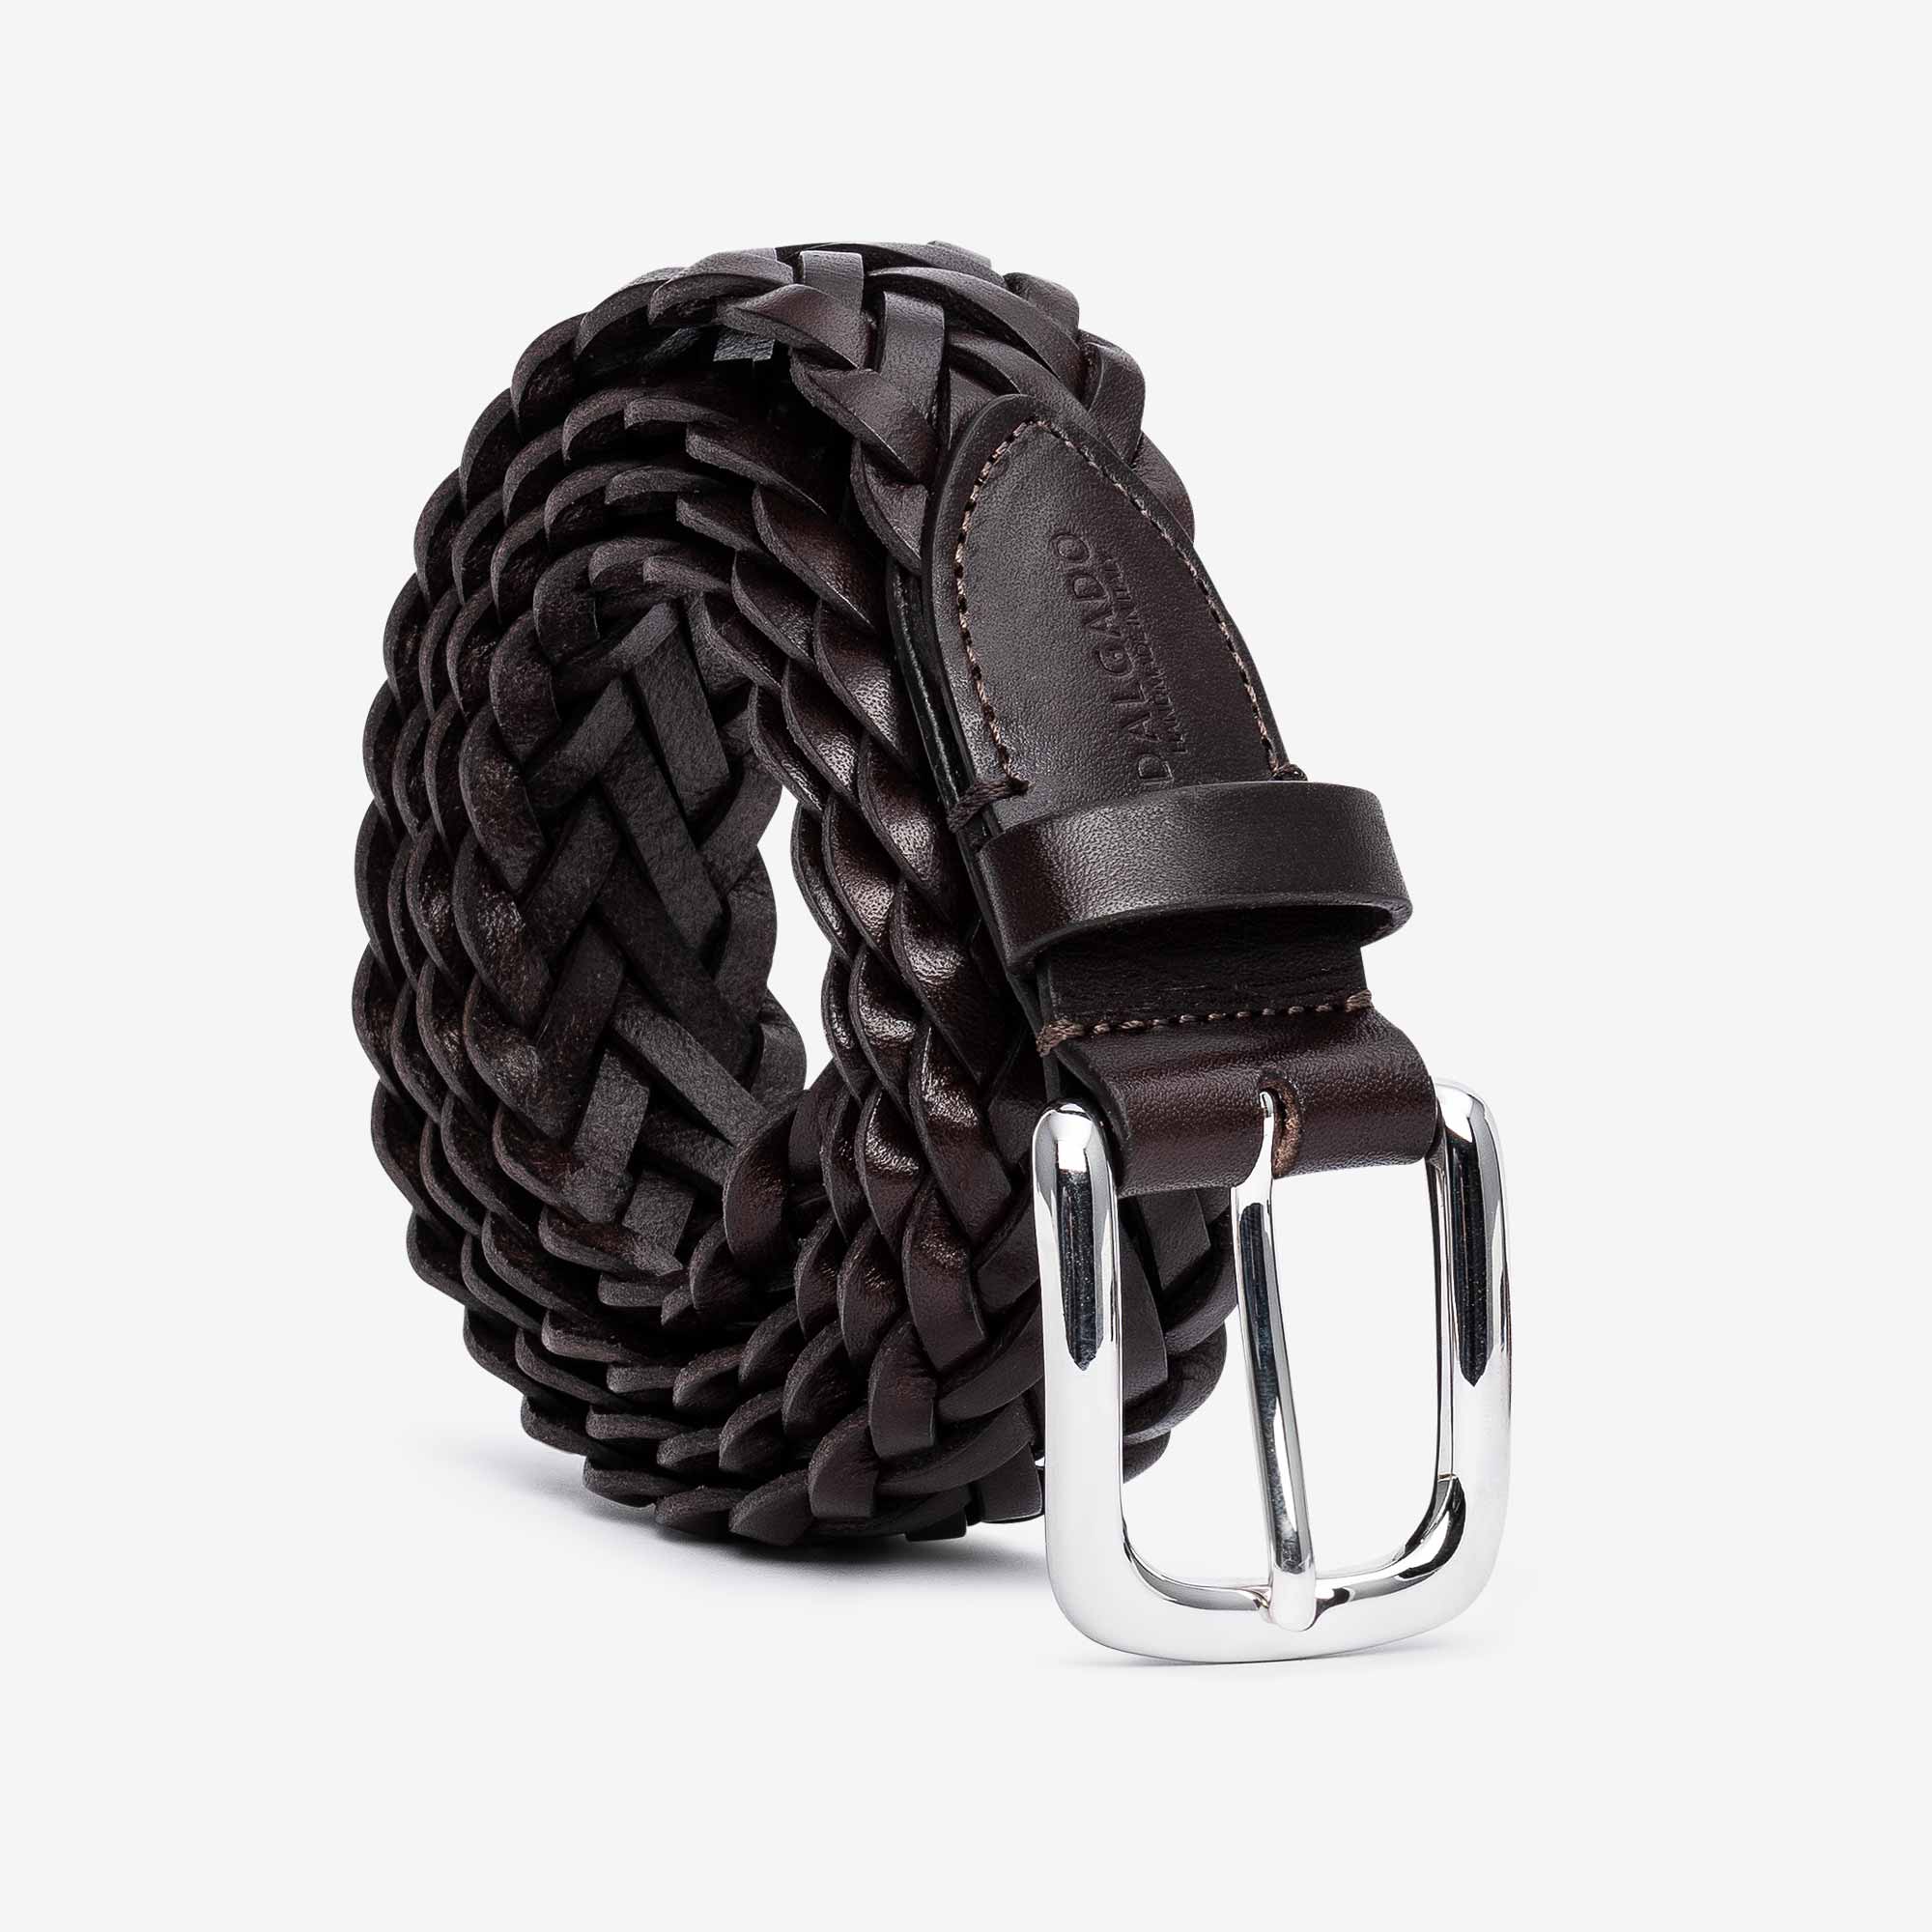 Men's Braided Belt handmade genuine leather belt. men's leather